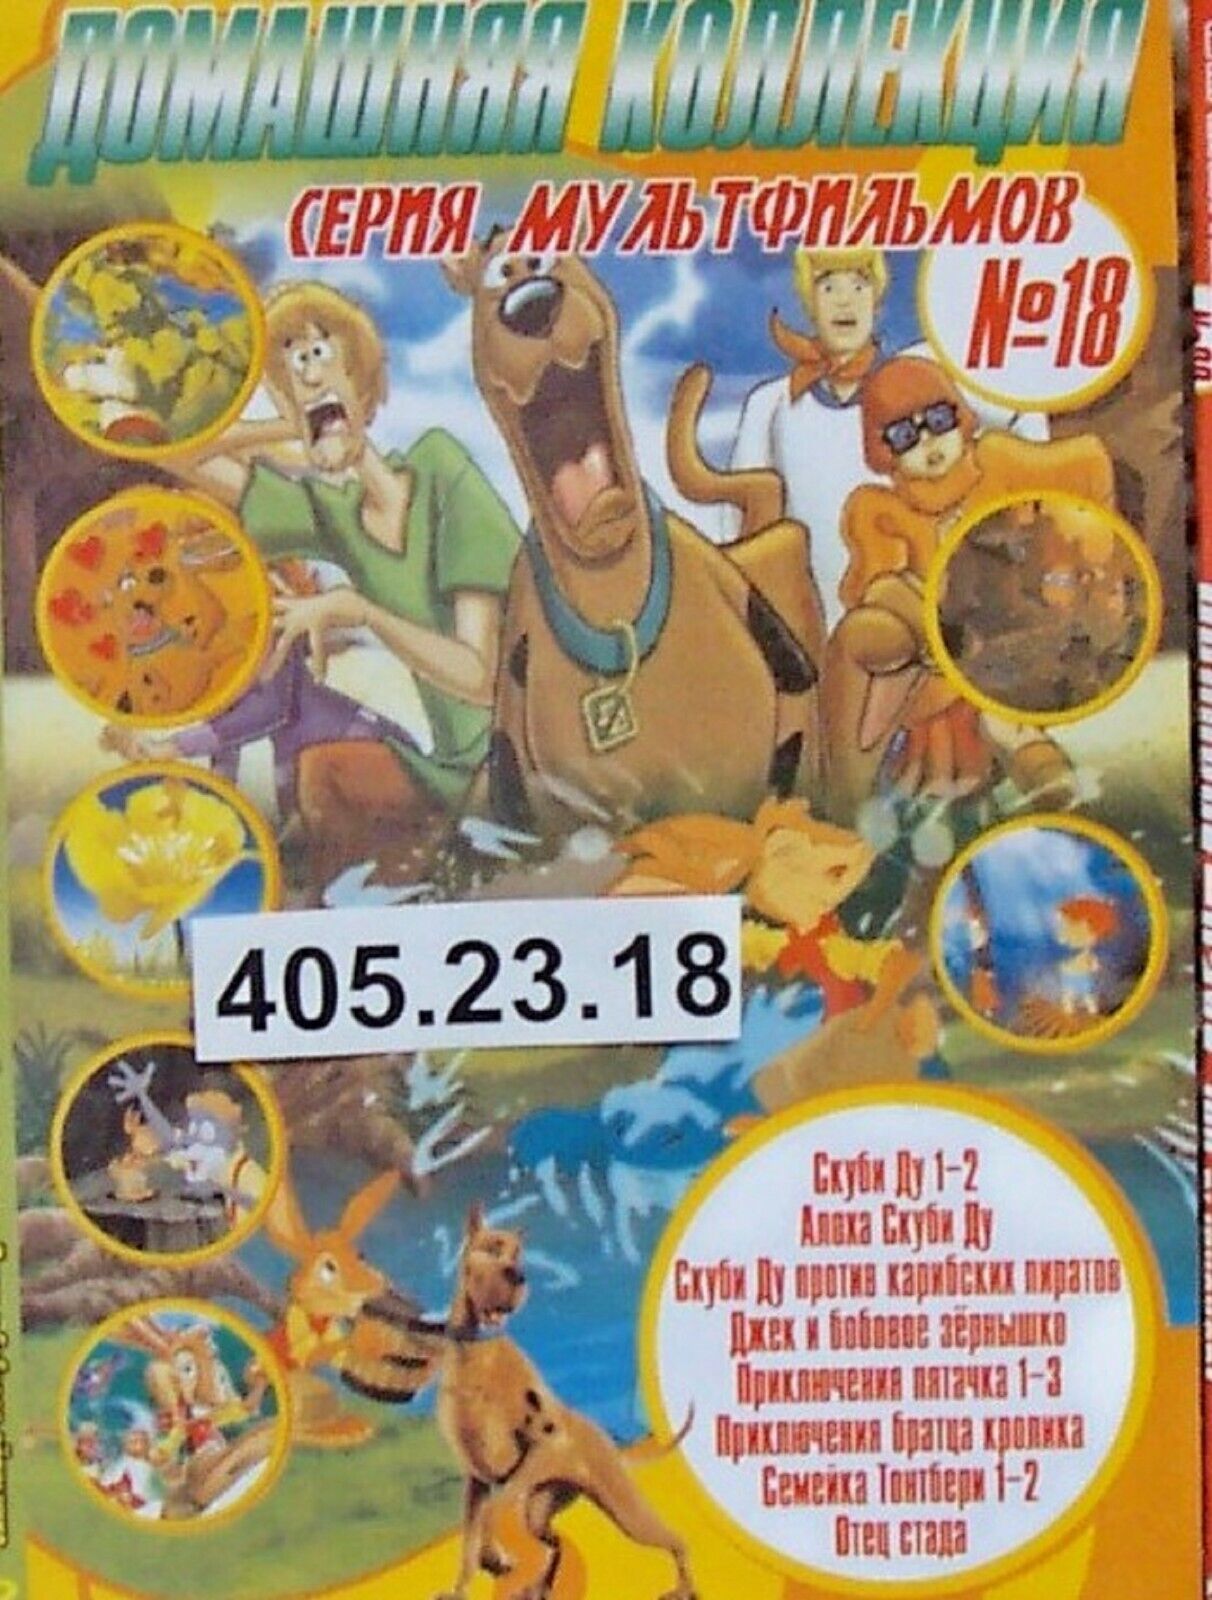 Russian Children DVD PAL* 405   23.18   Скуби Ду 1,2, Алоха Скуби Ду, СД против 